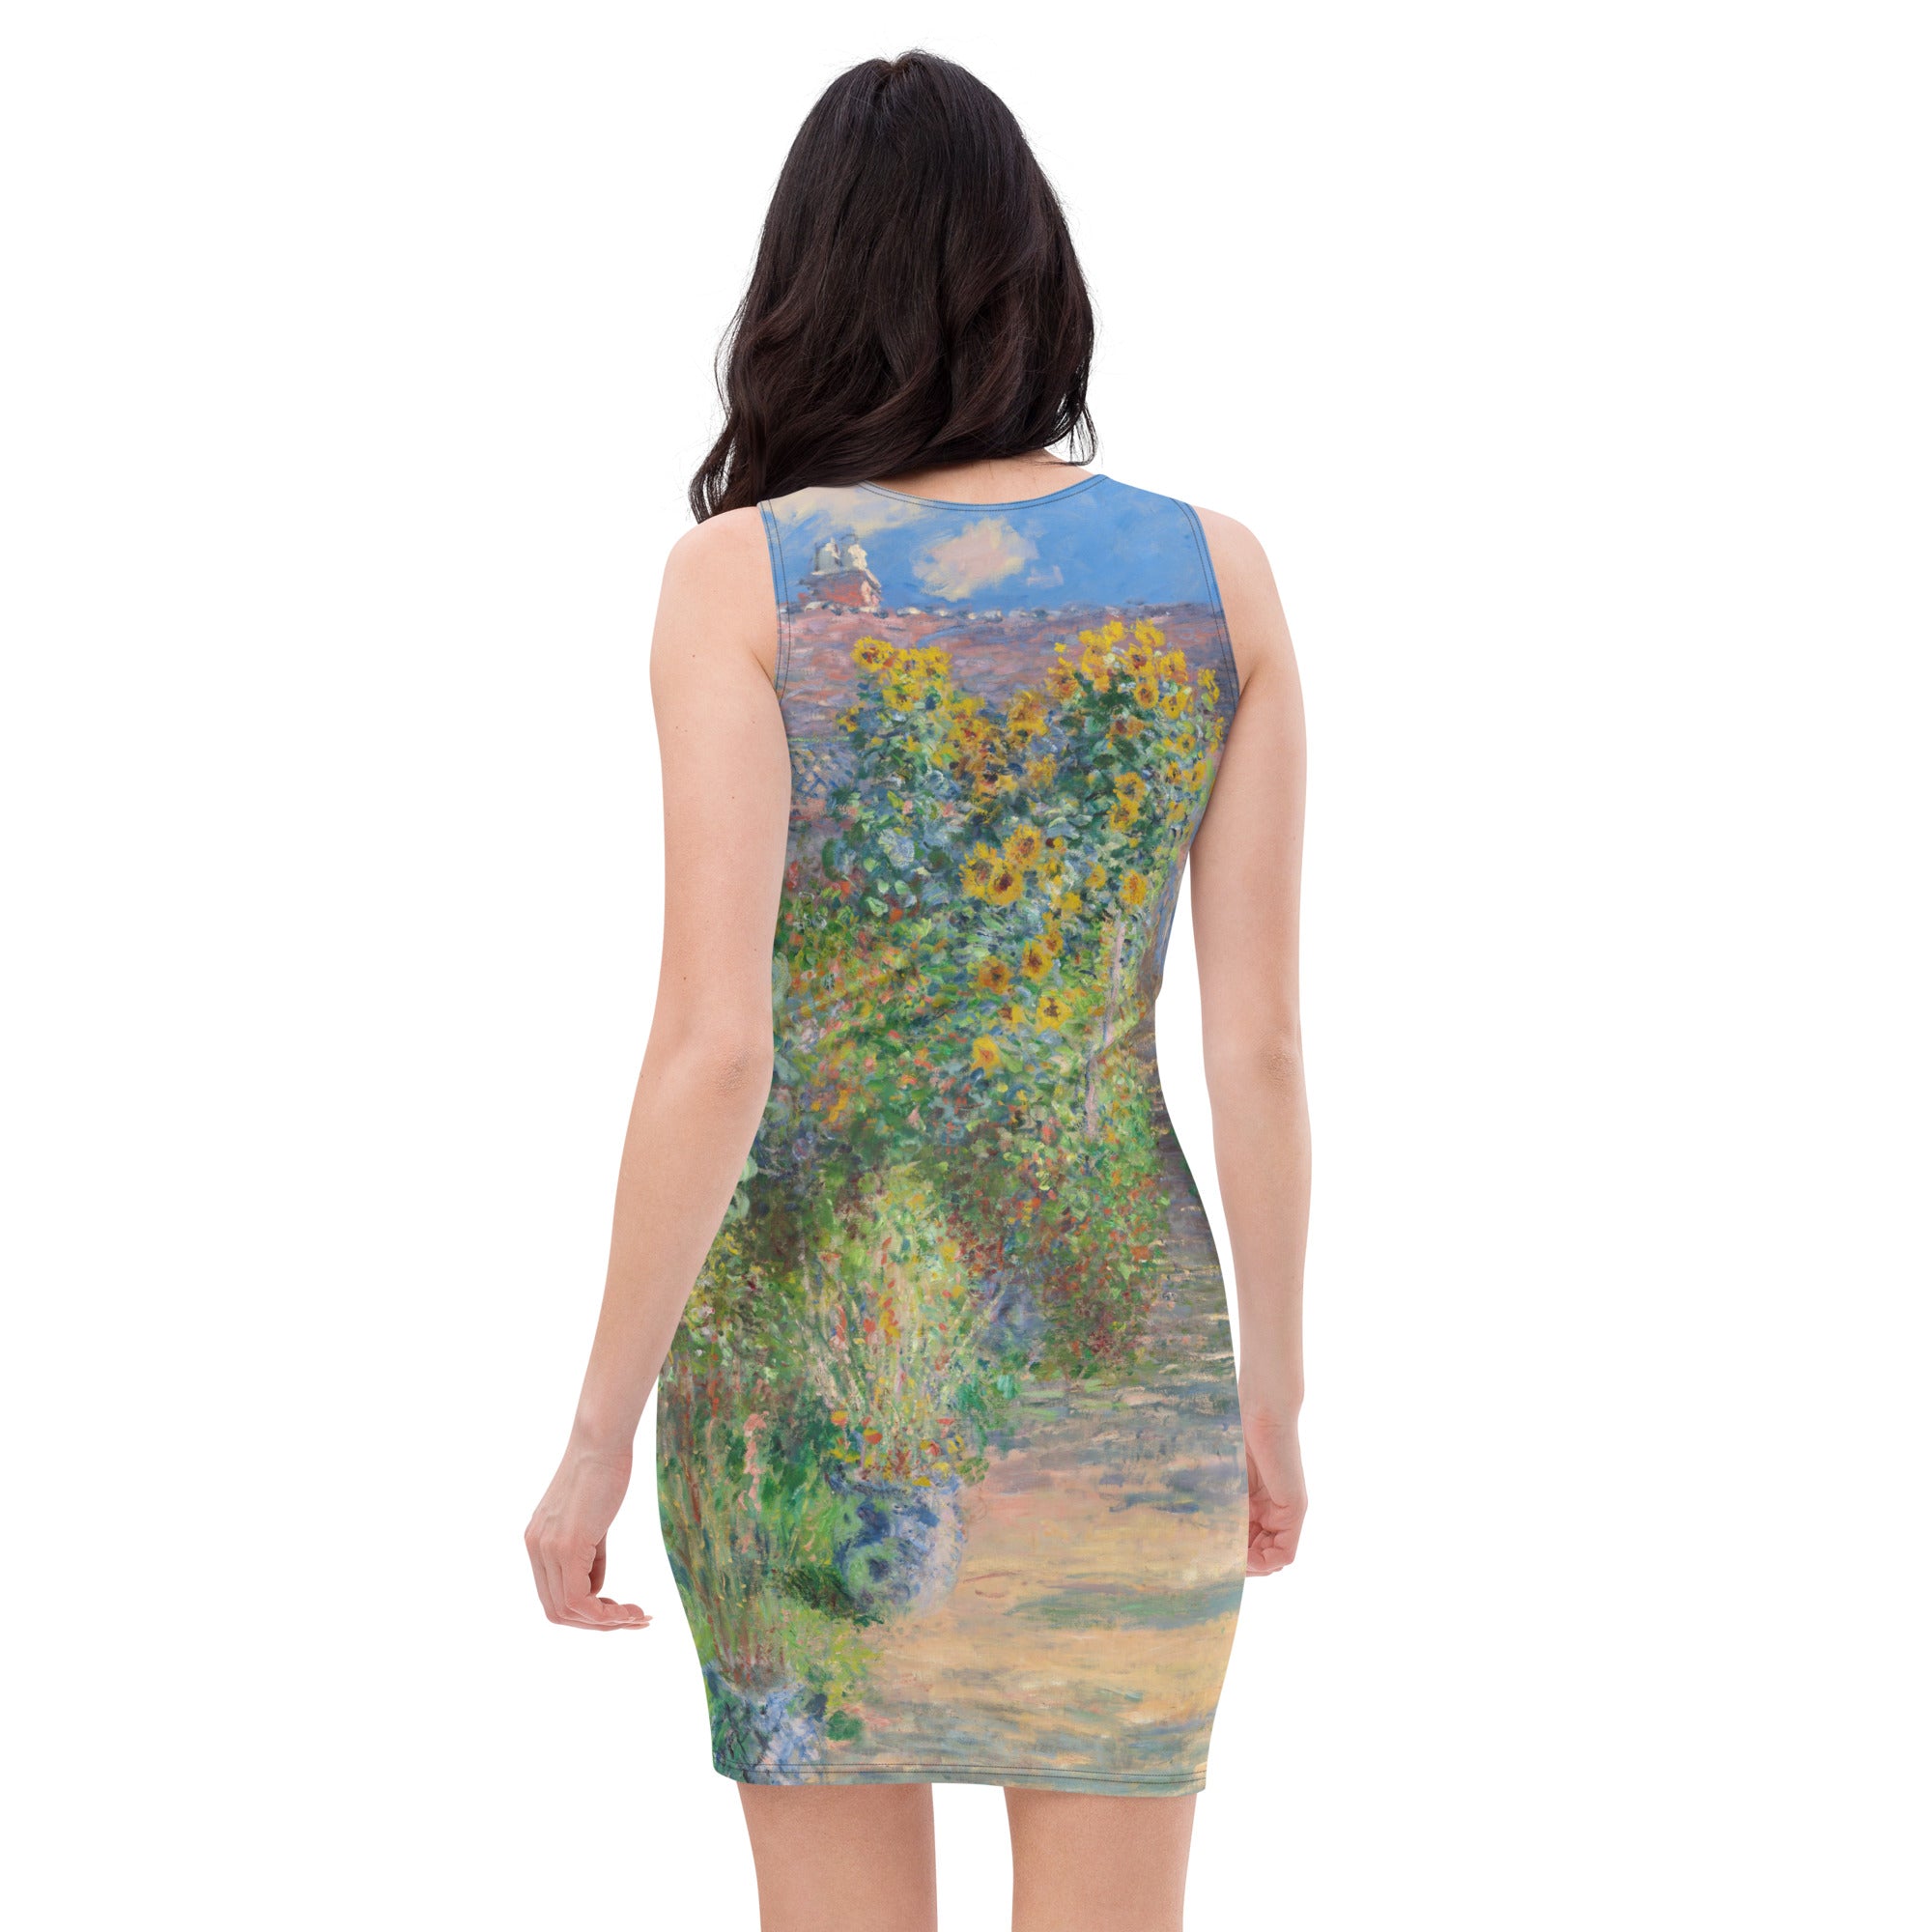 Claude Monet 'The Artist's Garden at Vétheuil' Famous Painting Bodycon Dress | Premium Art Dress